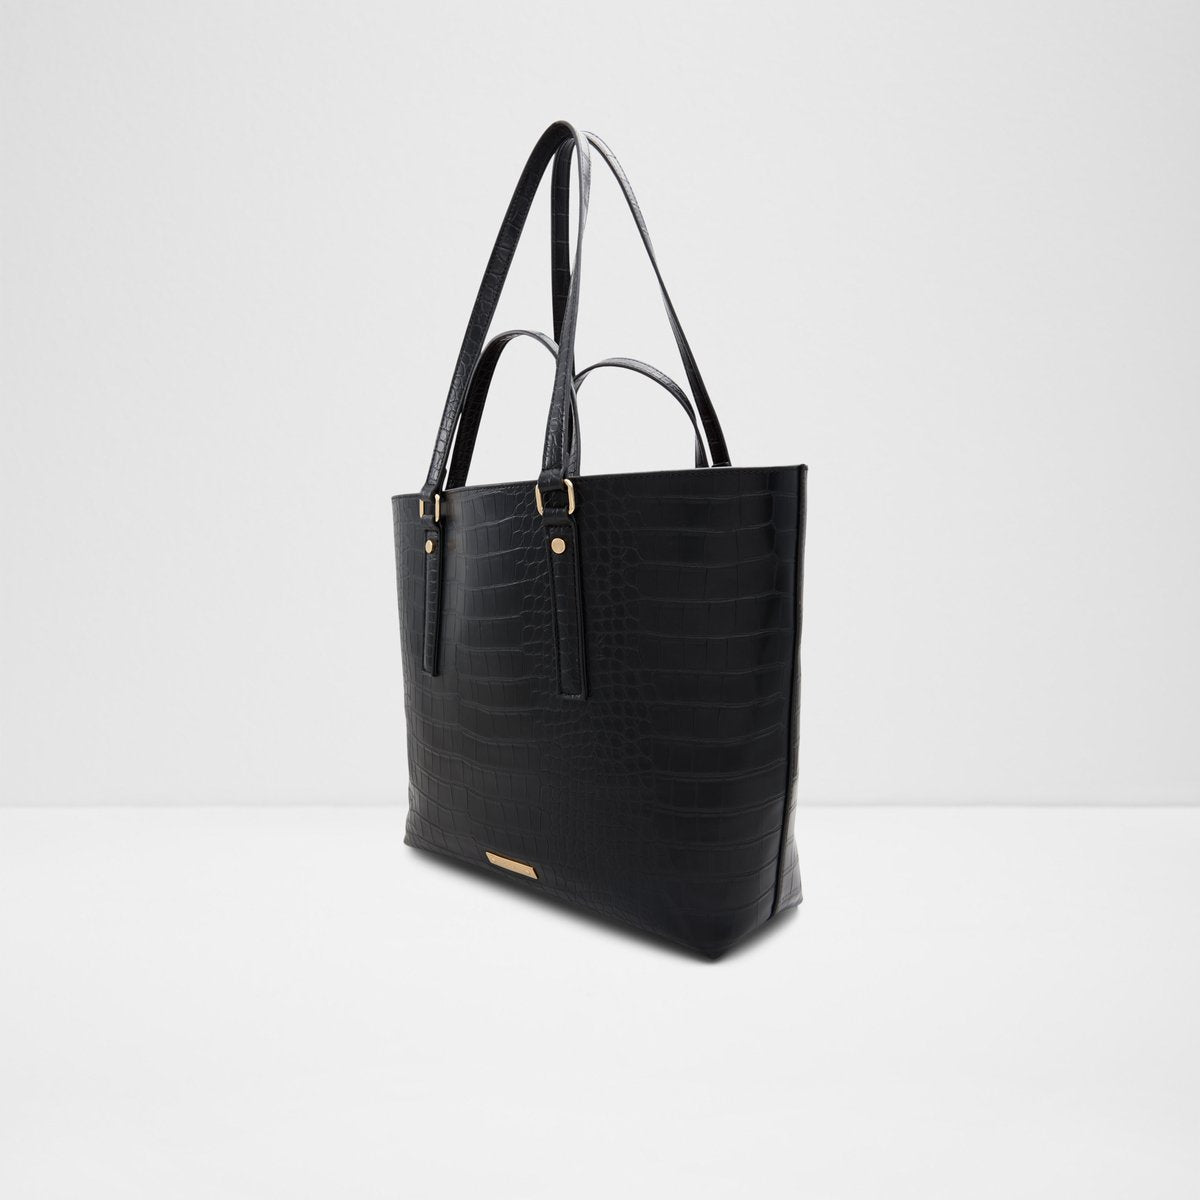 Aldo Cibriannx Handbags Black : One Size